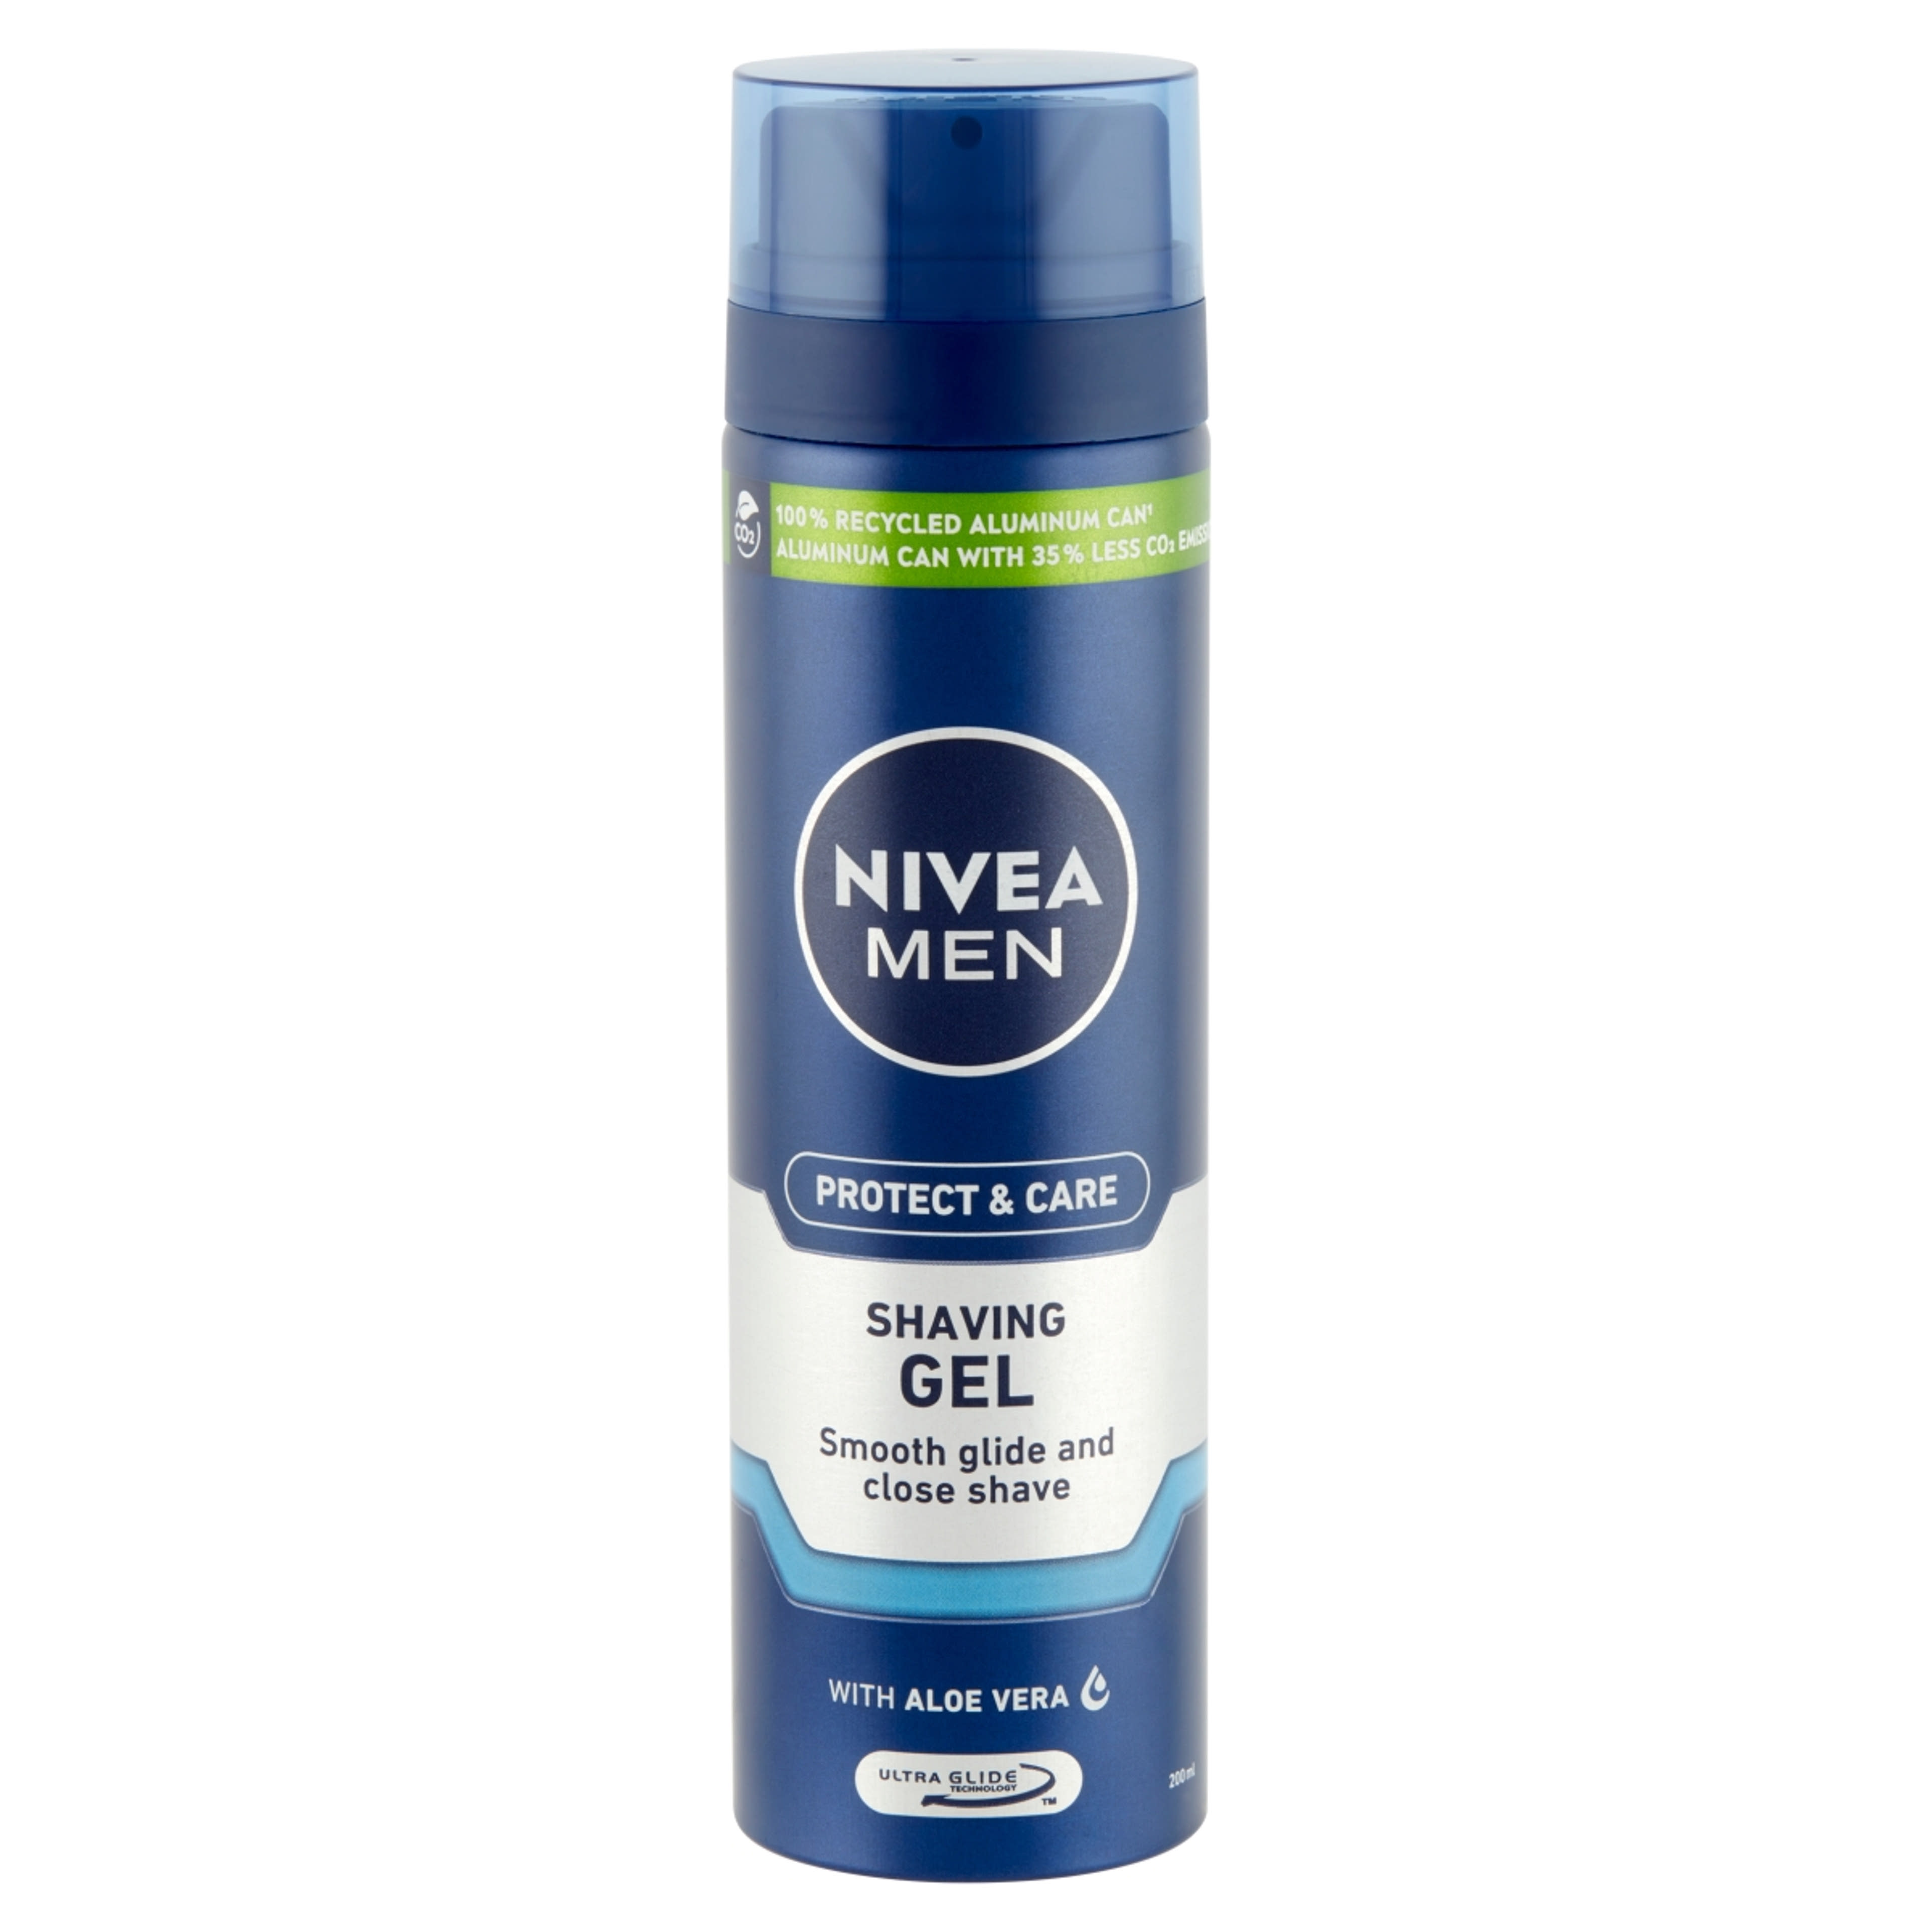 Nivea Men Protect & Care borotvagél - 200 ml-2